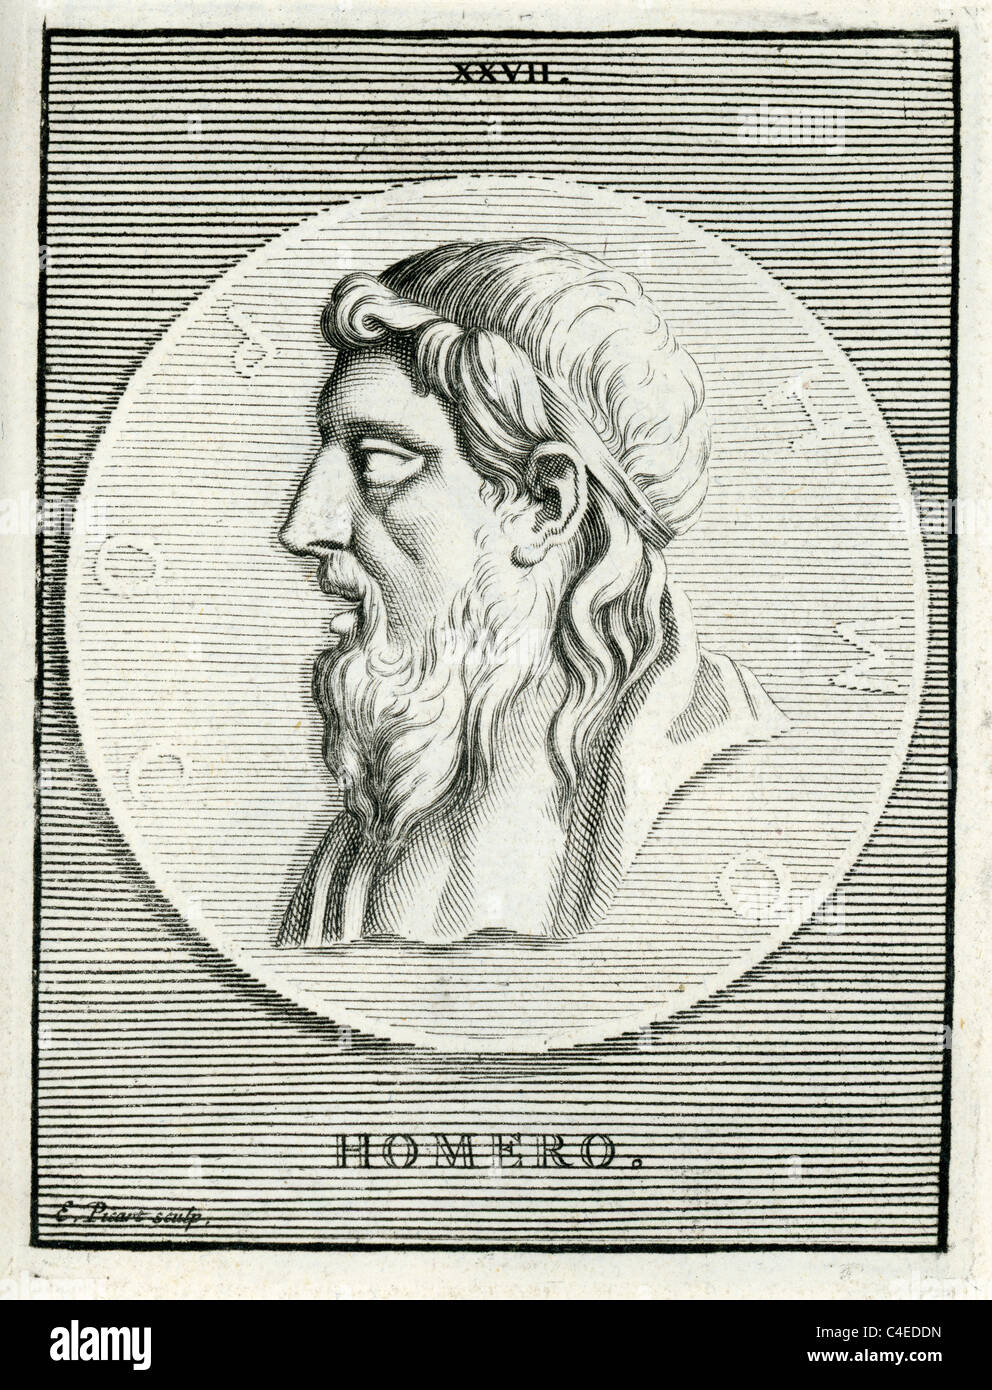 Ritratto classico di Omero autore dell'Iliade e l'Odissea, ed è venerato come il più grande greco antico poeta epico. Foto Stock